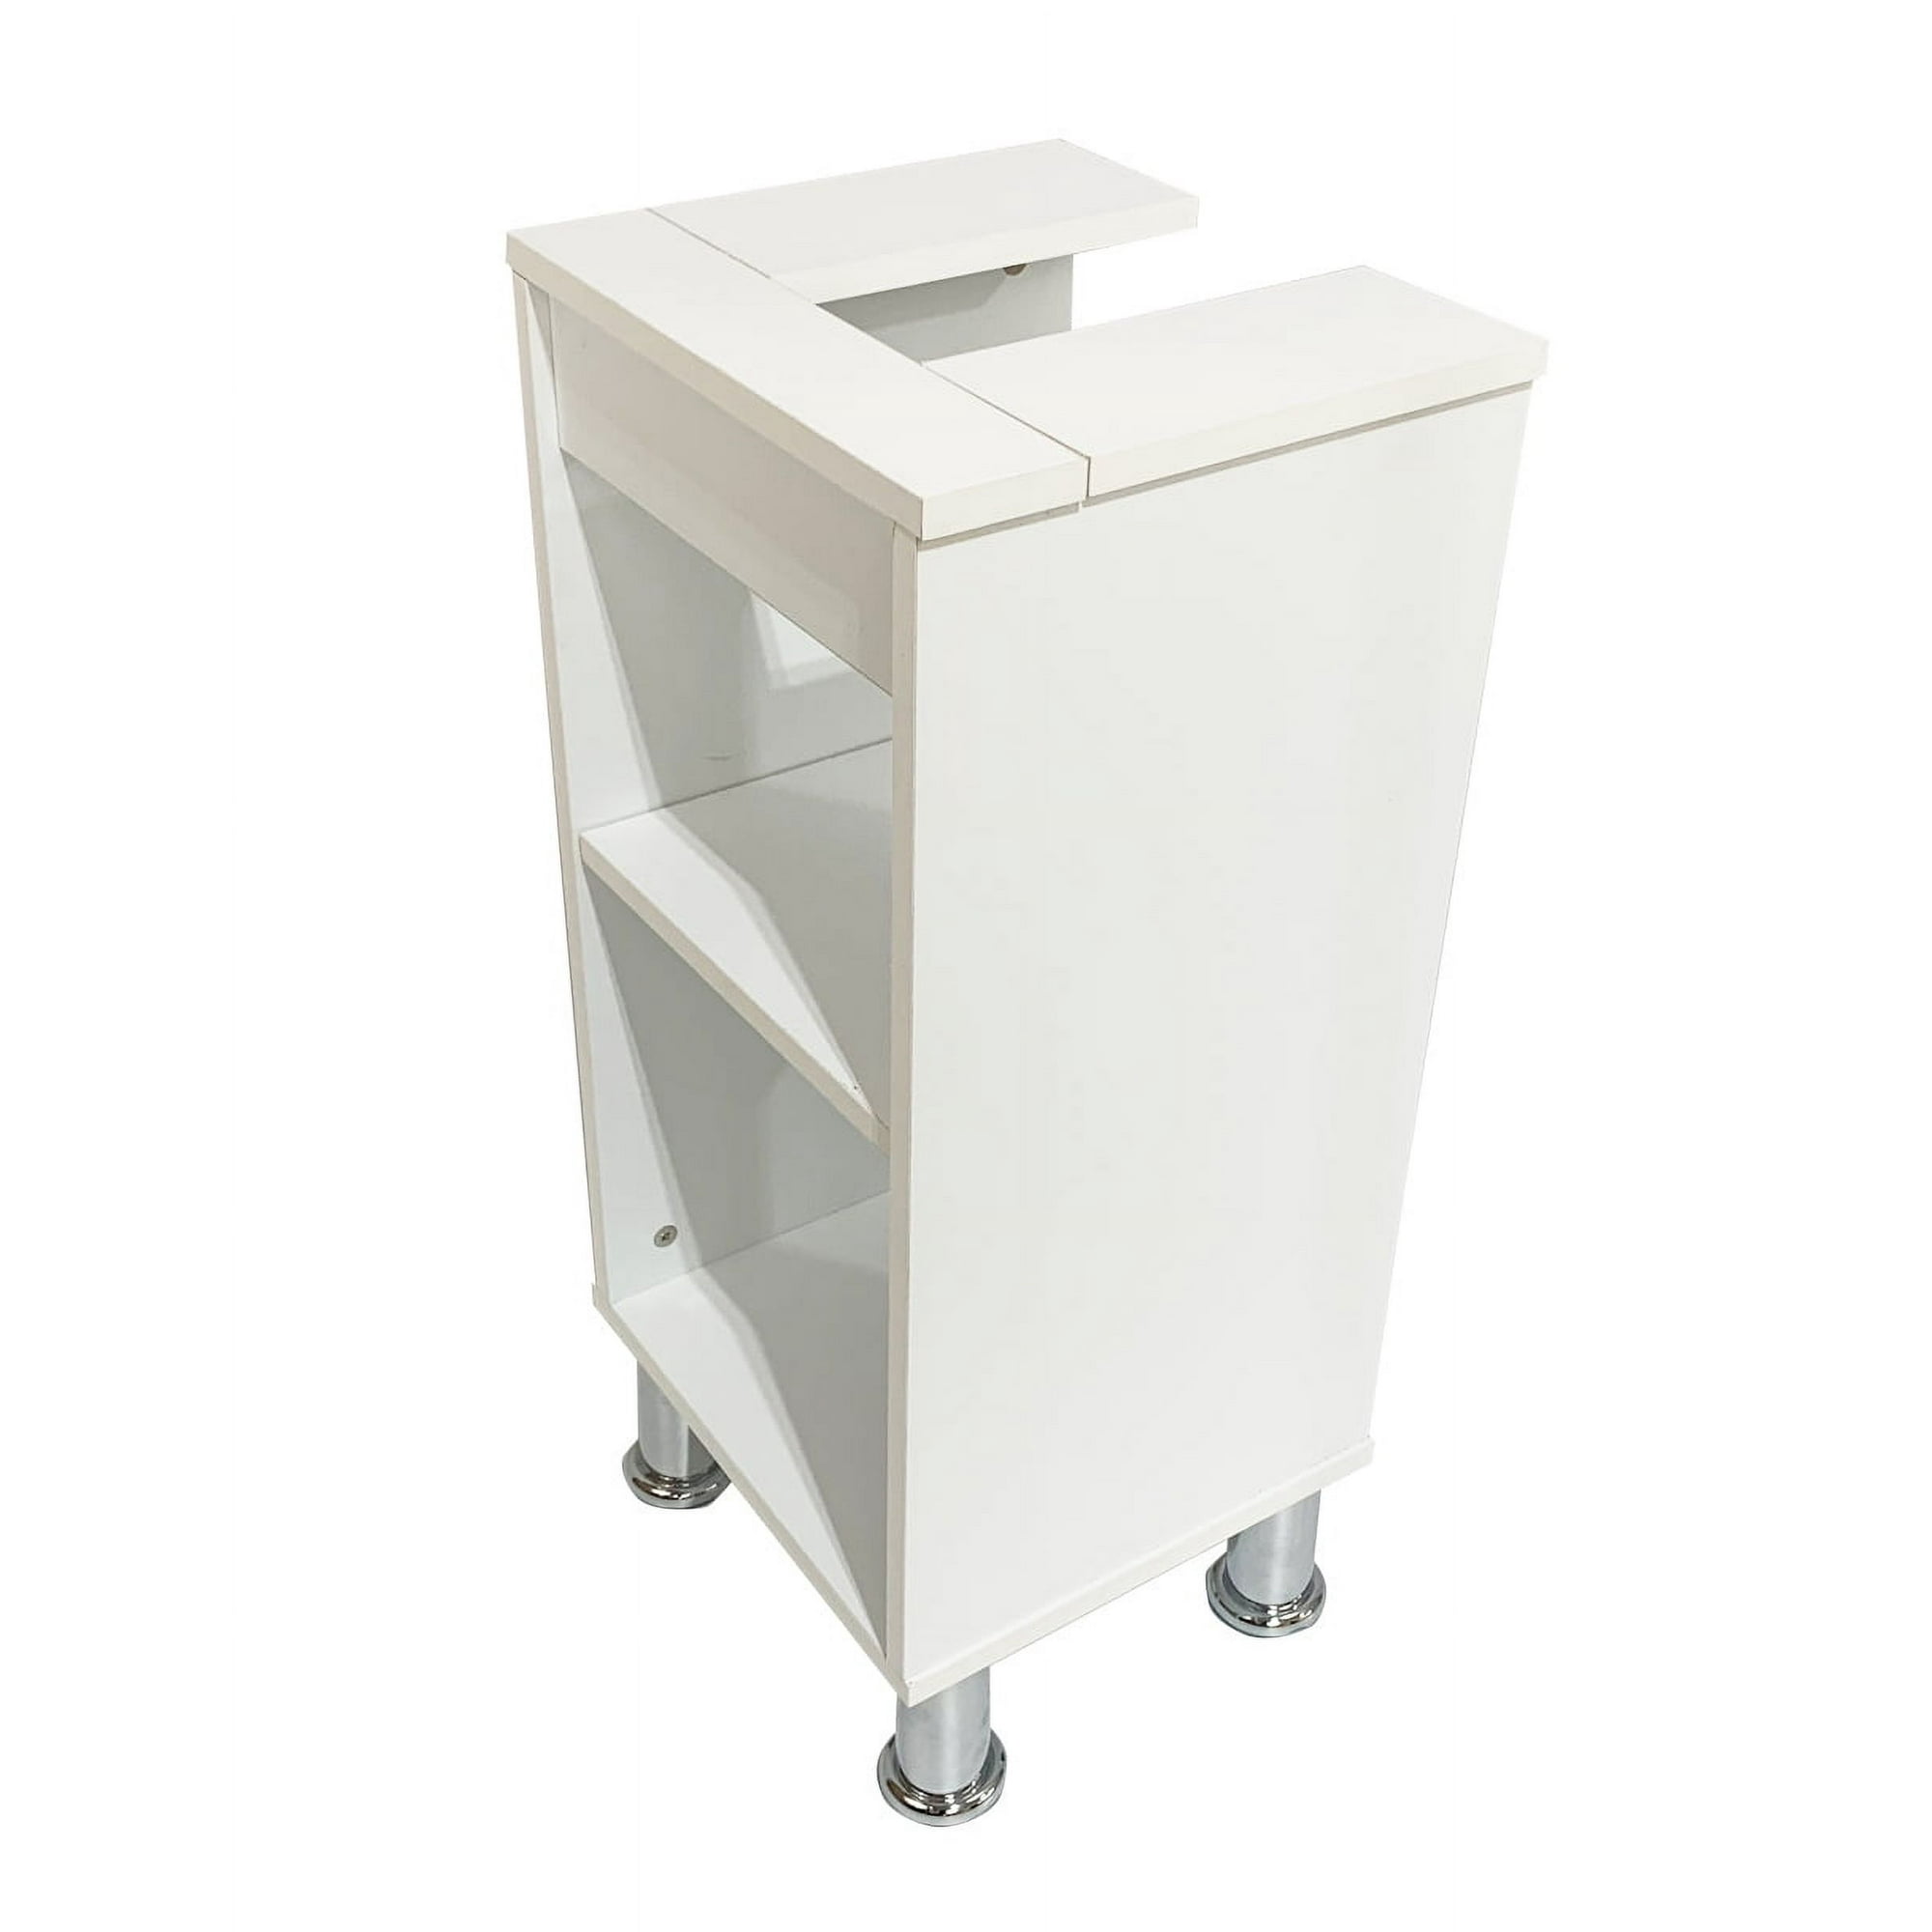 Gabinete de baño para lavabo sin ovalin moderno minimalista (Blanco) decomobil gabinete para baño